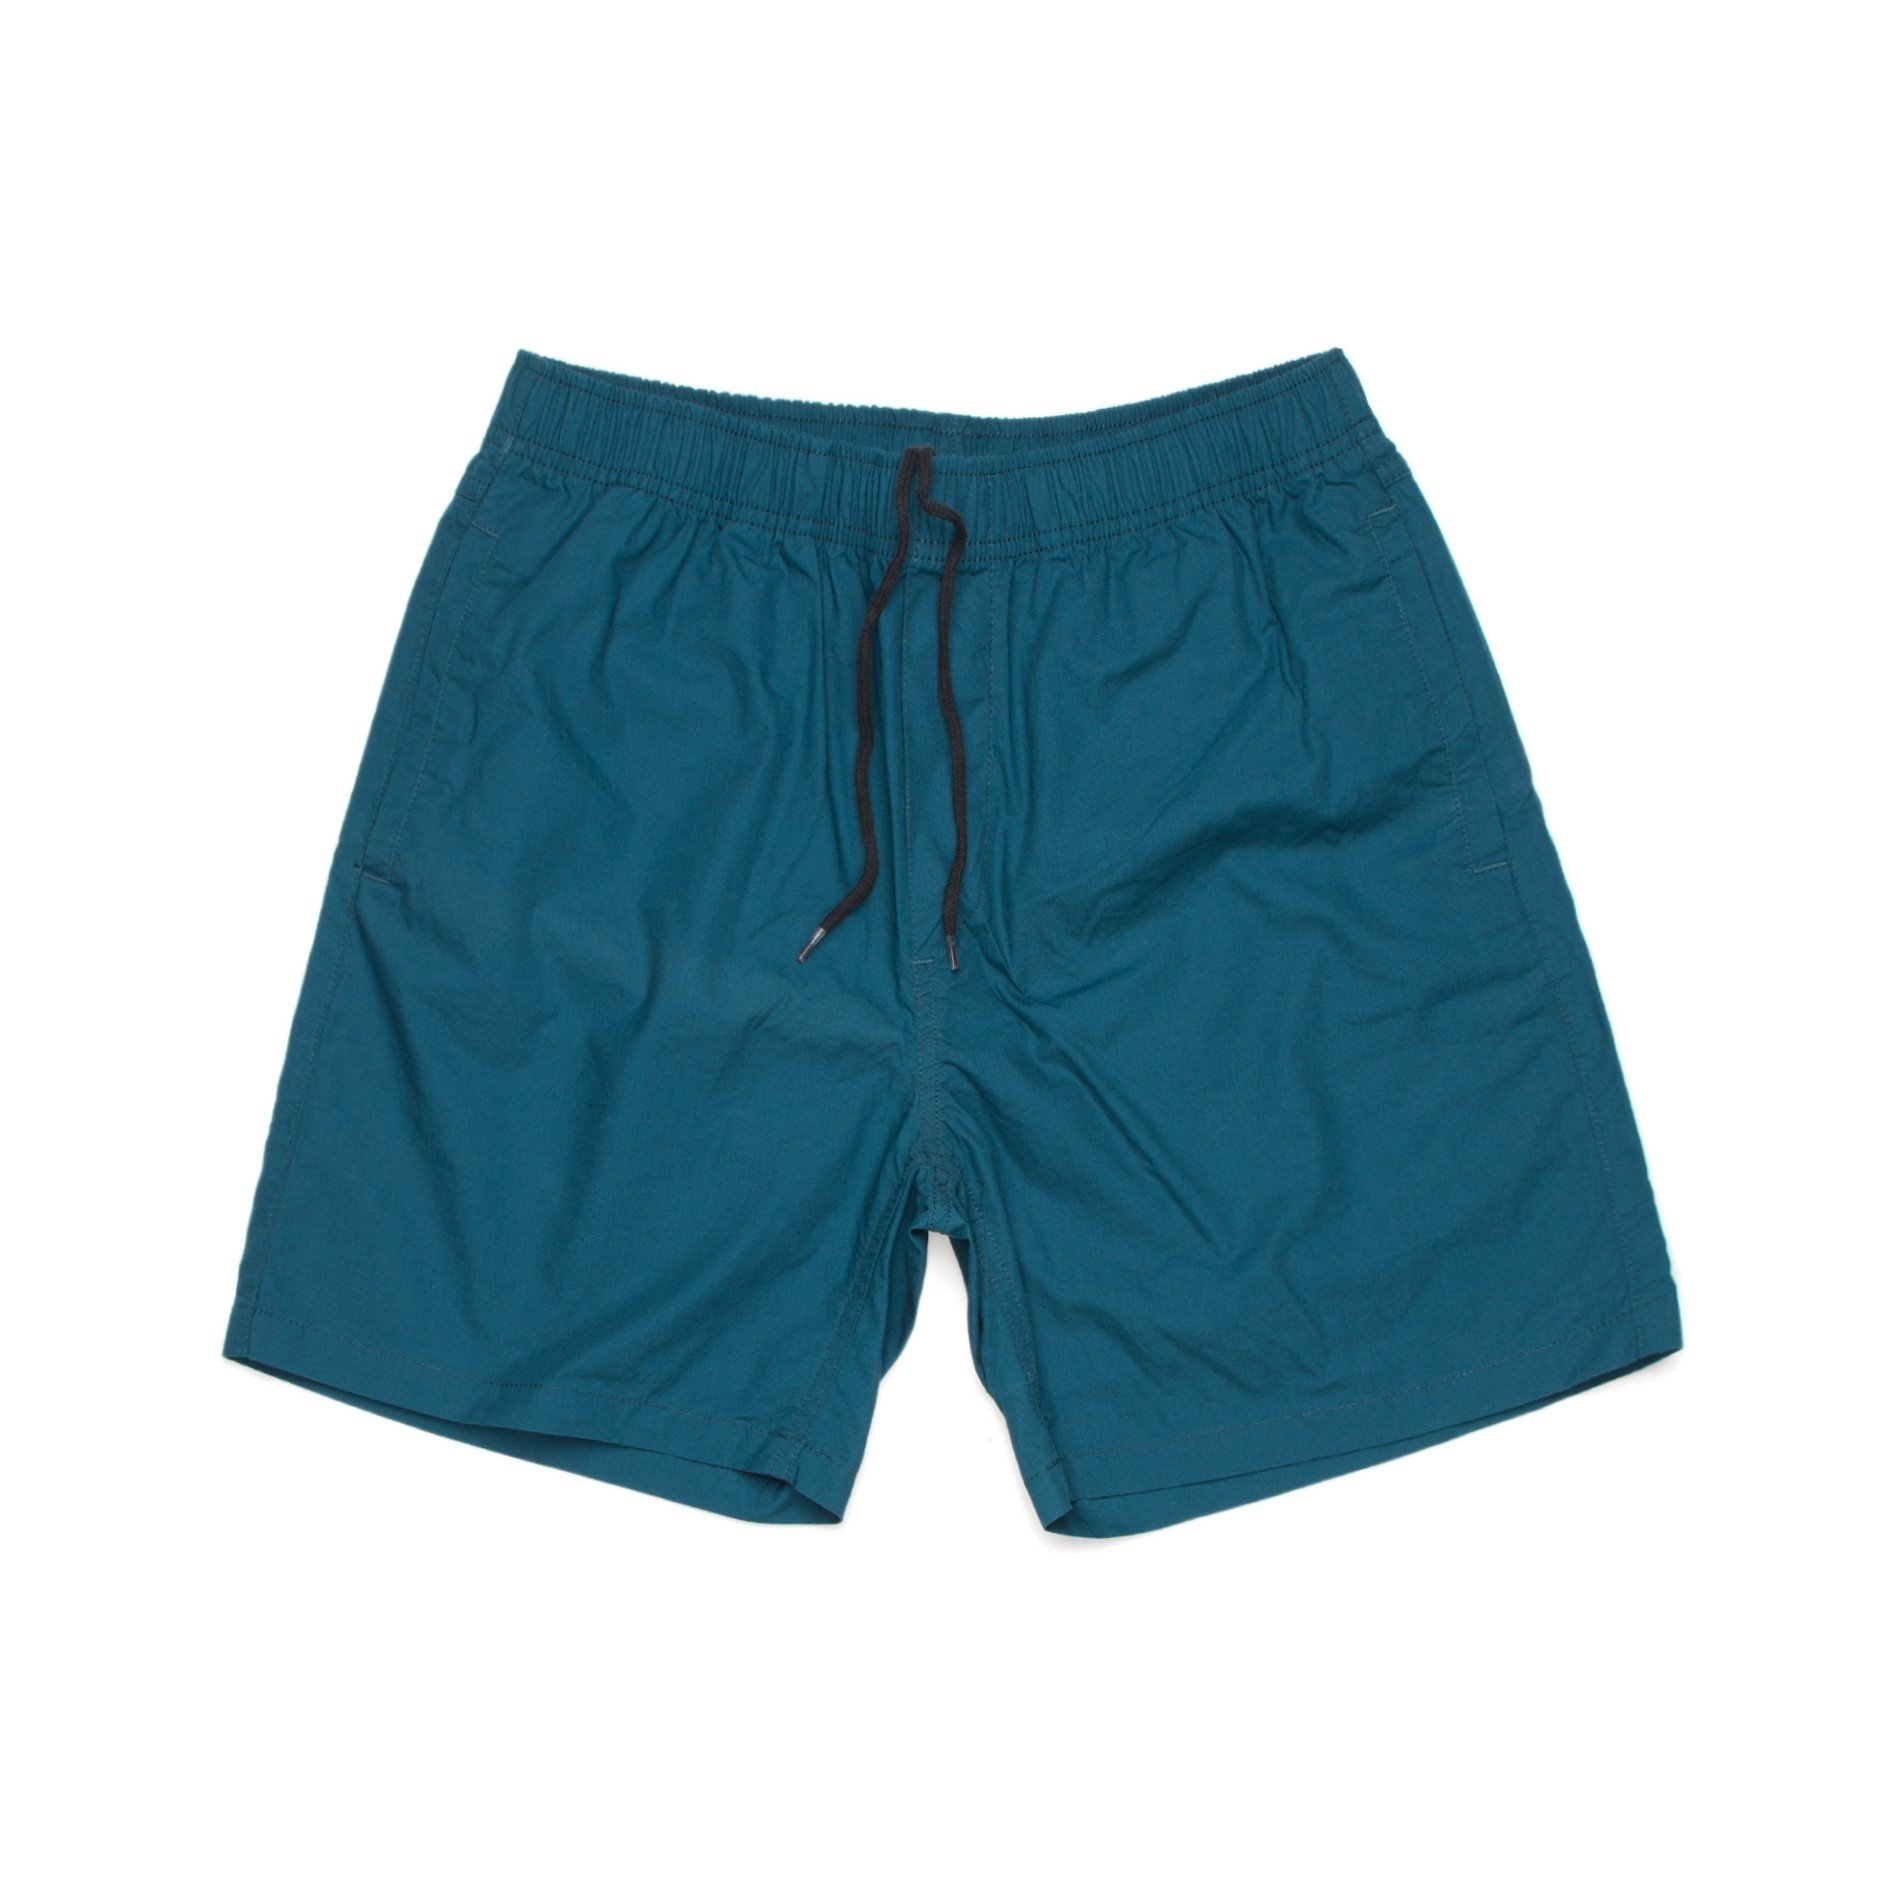 AS Colour Beach Shorts - 5903